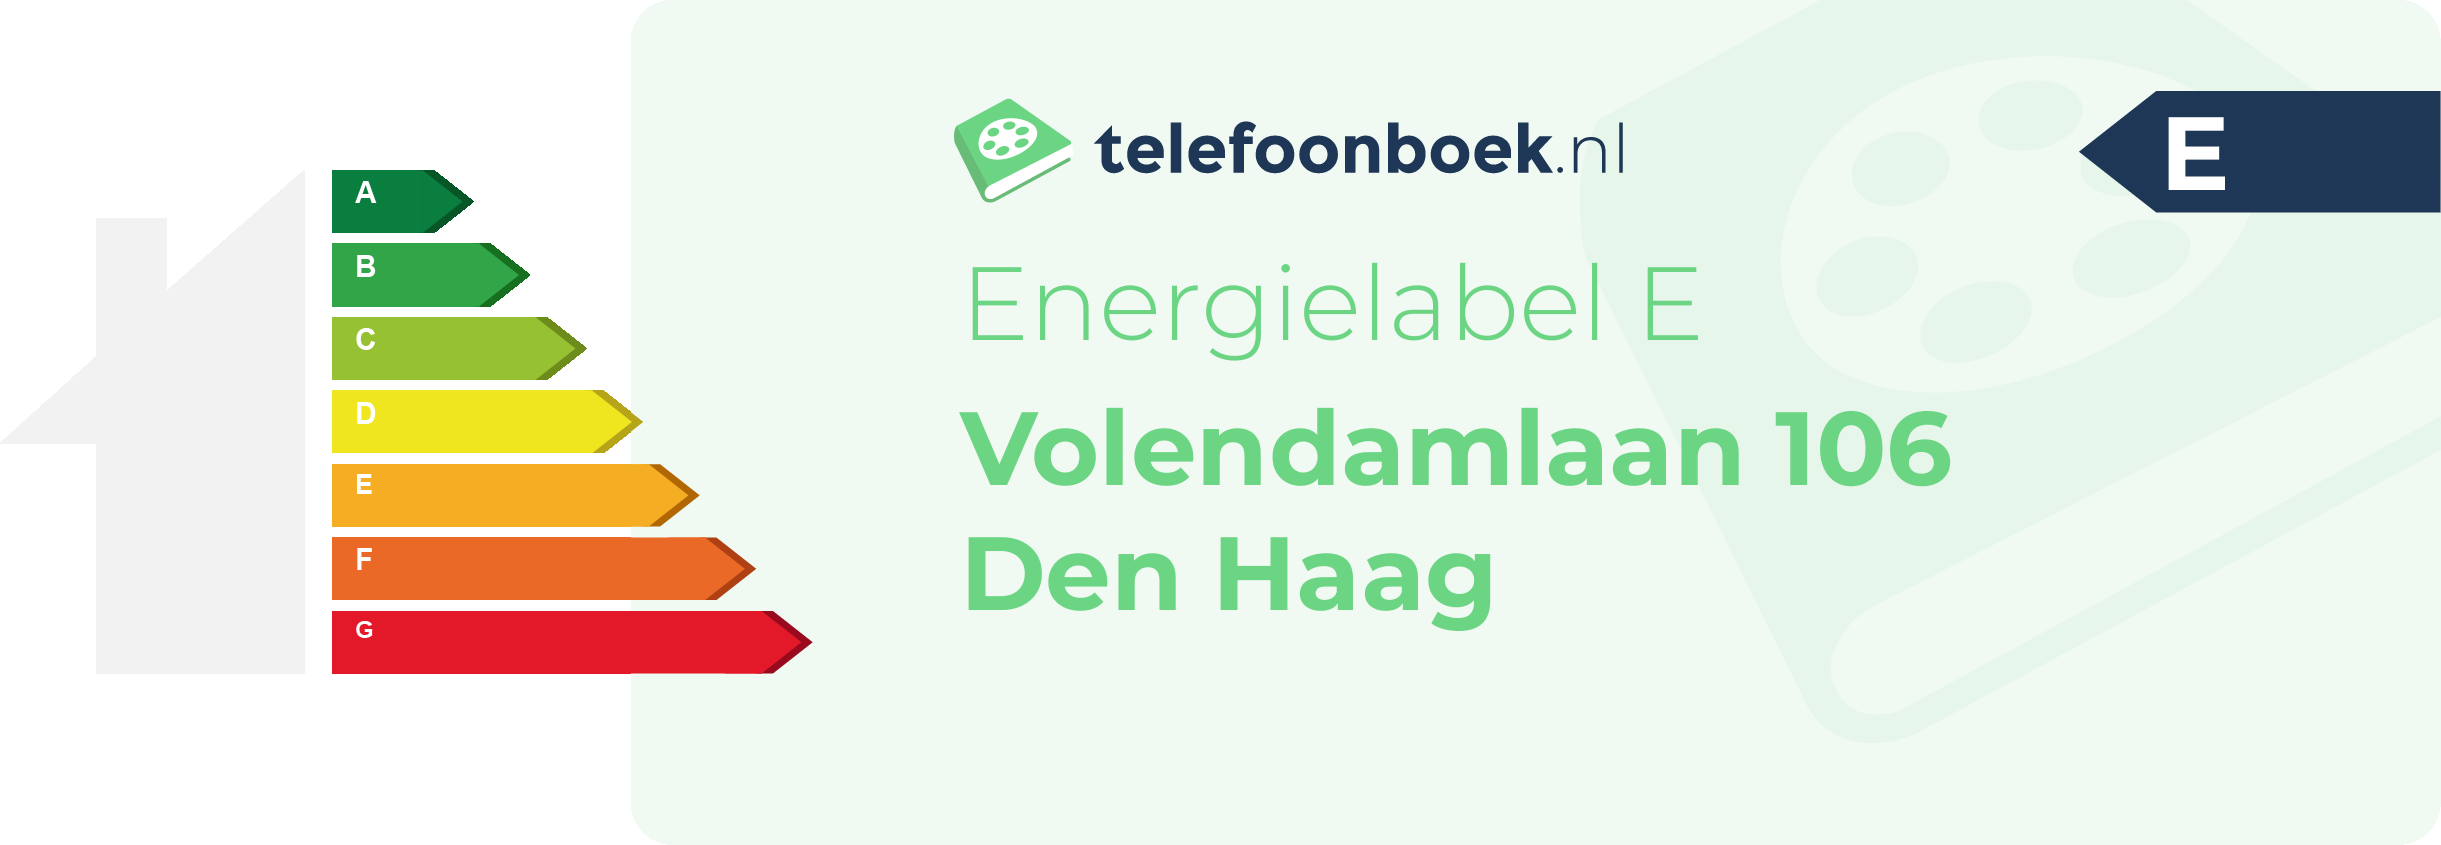 Energielabel Volendamlaan 106 Den Haag